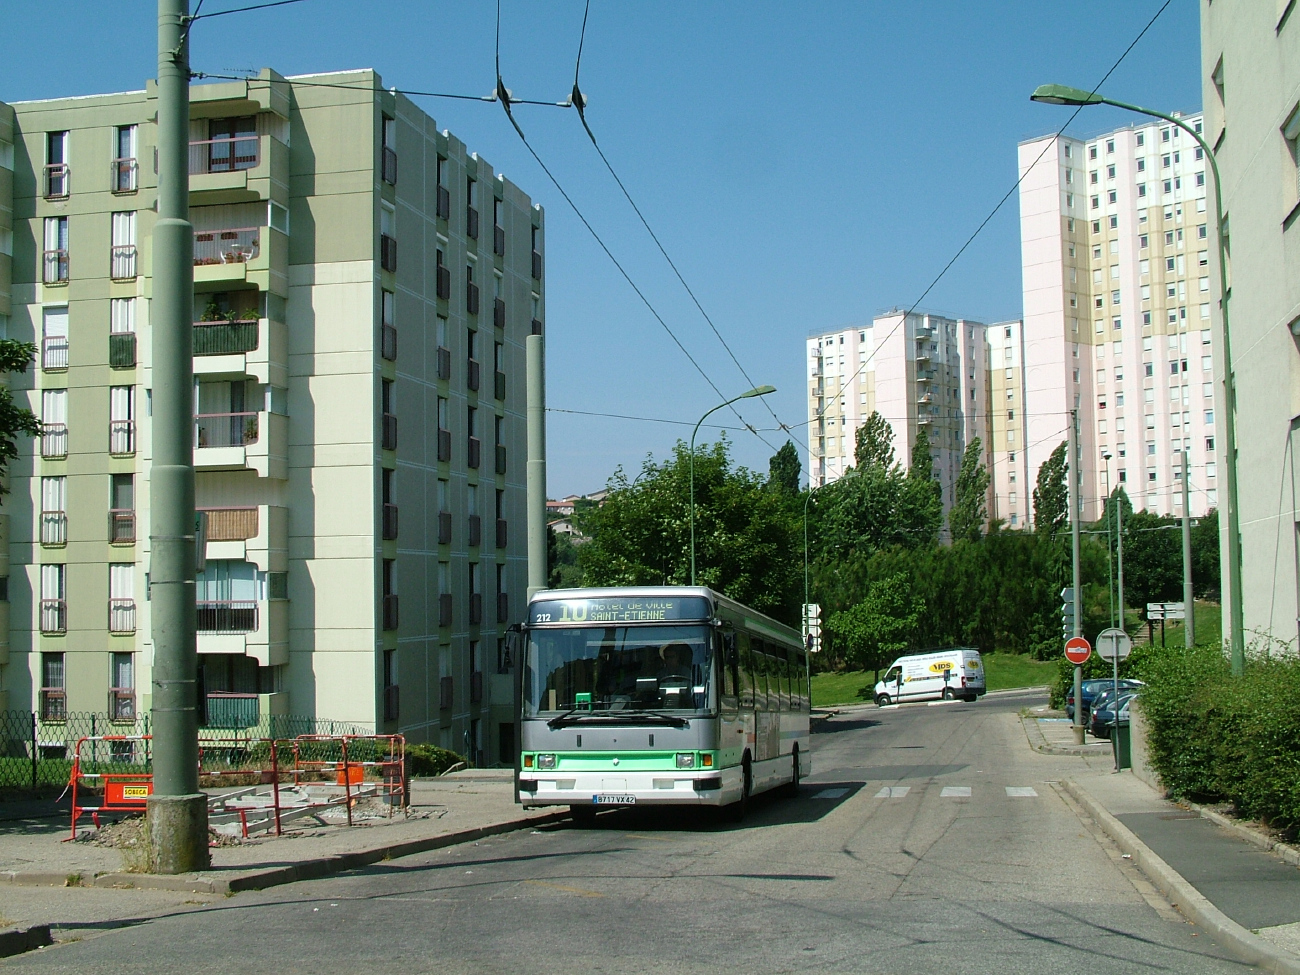 Сент-Этьен — Троллейбусные линии и инфраструктура